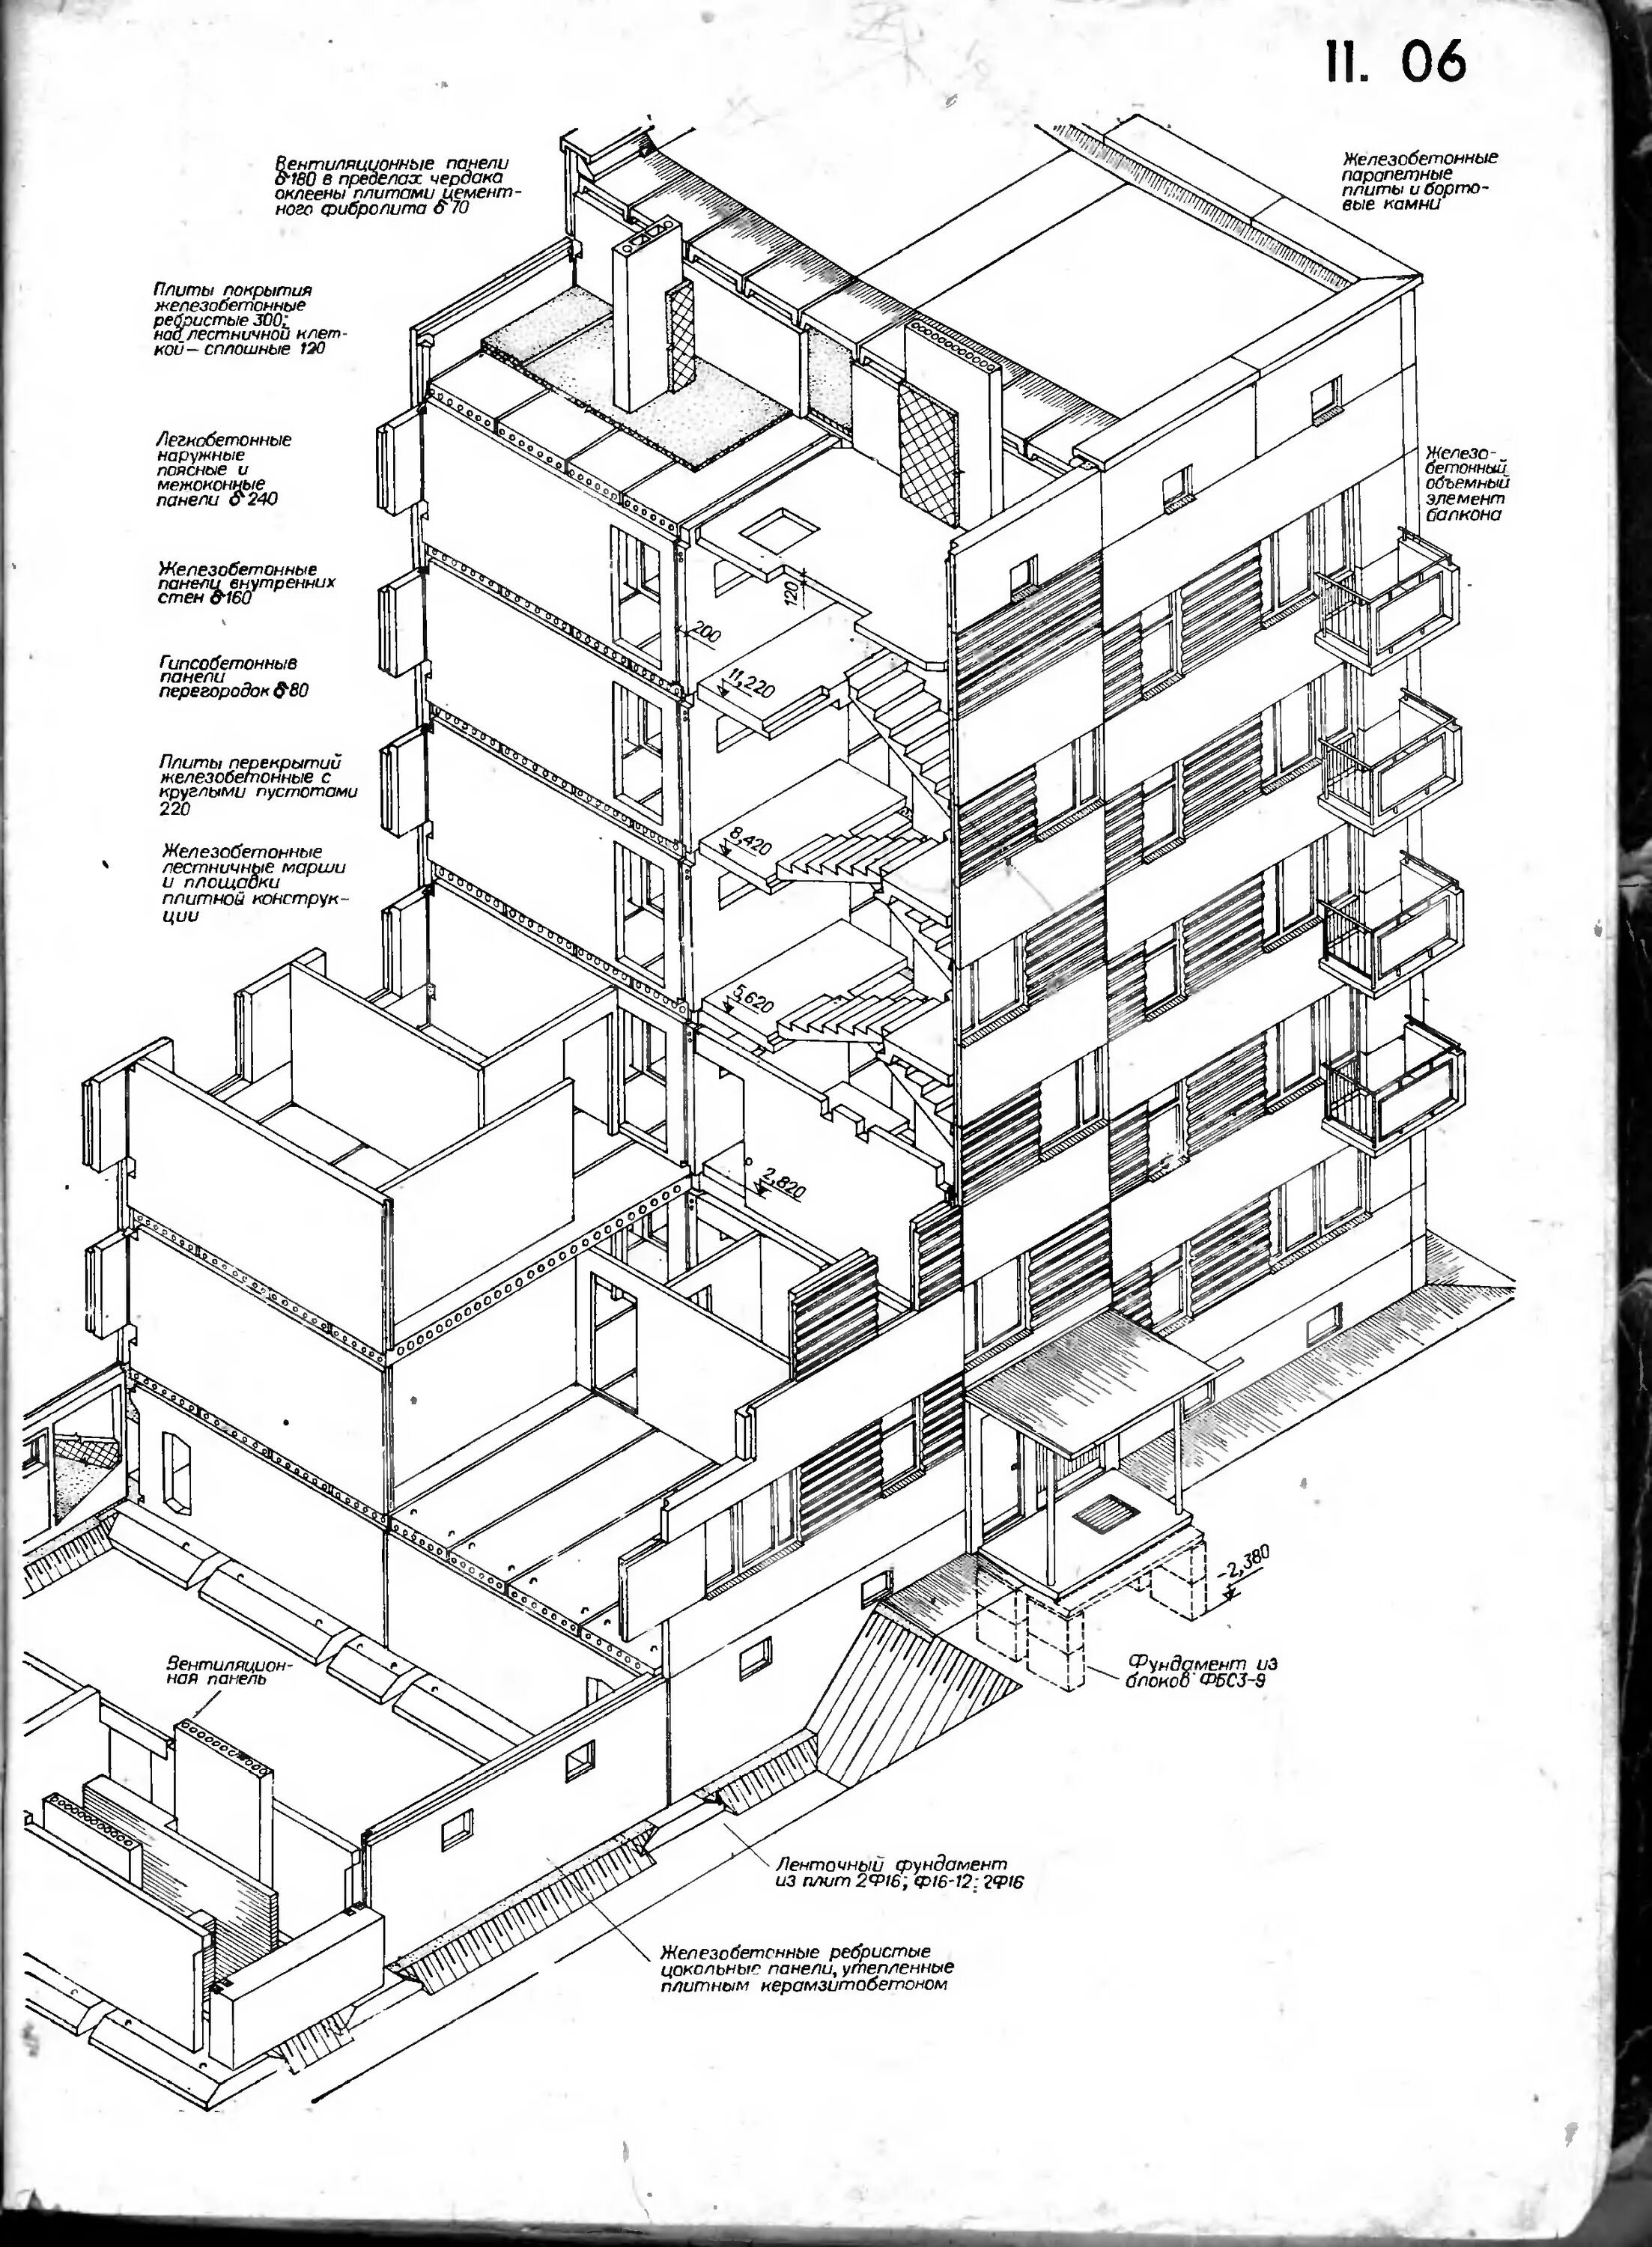 Каркасно-панельная схема высотных зданий. Разрез 5 этажного панельного дома. Разрез кирпичного многоэтажного здания. Чертёж монолитного многоэтажного дома.